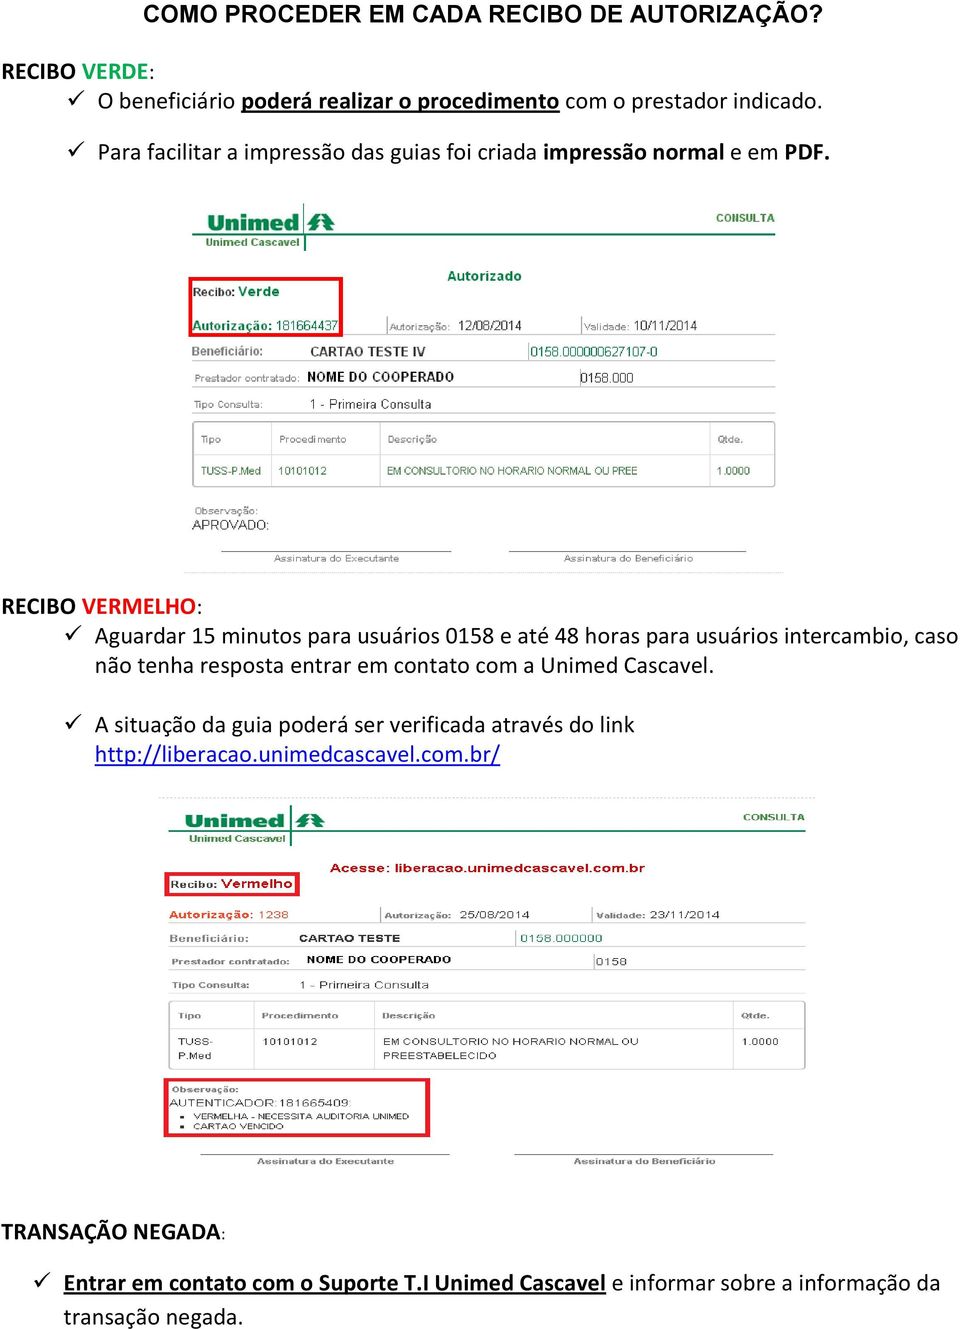 RECIBO VERMELHO: Aguardar 15 minutos para usuários 0158 e até 48 horas para usuários intercambio, caso não tenha resposta entrar em contato com a